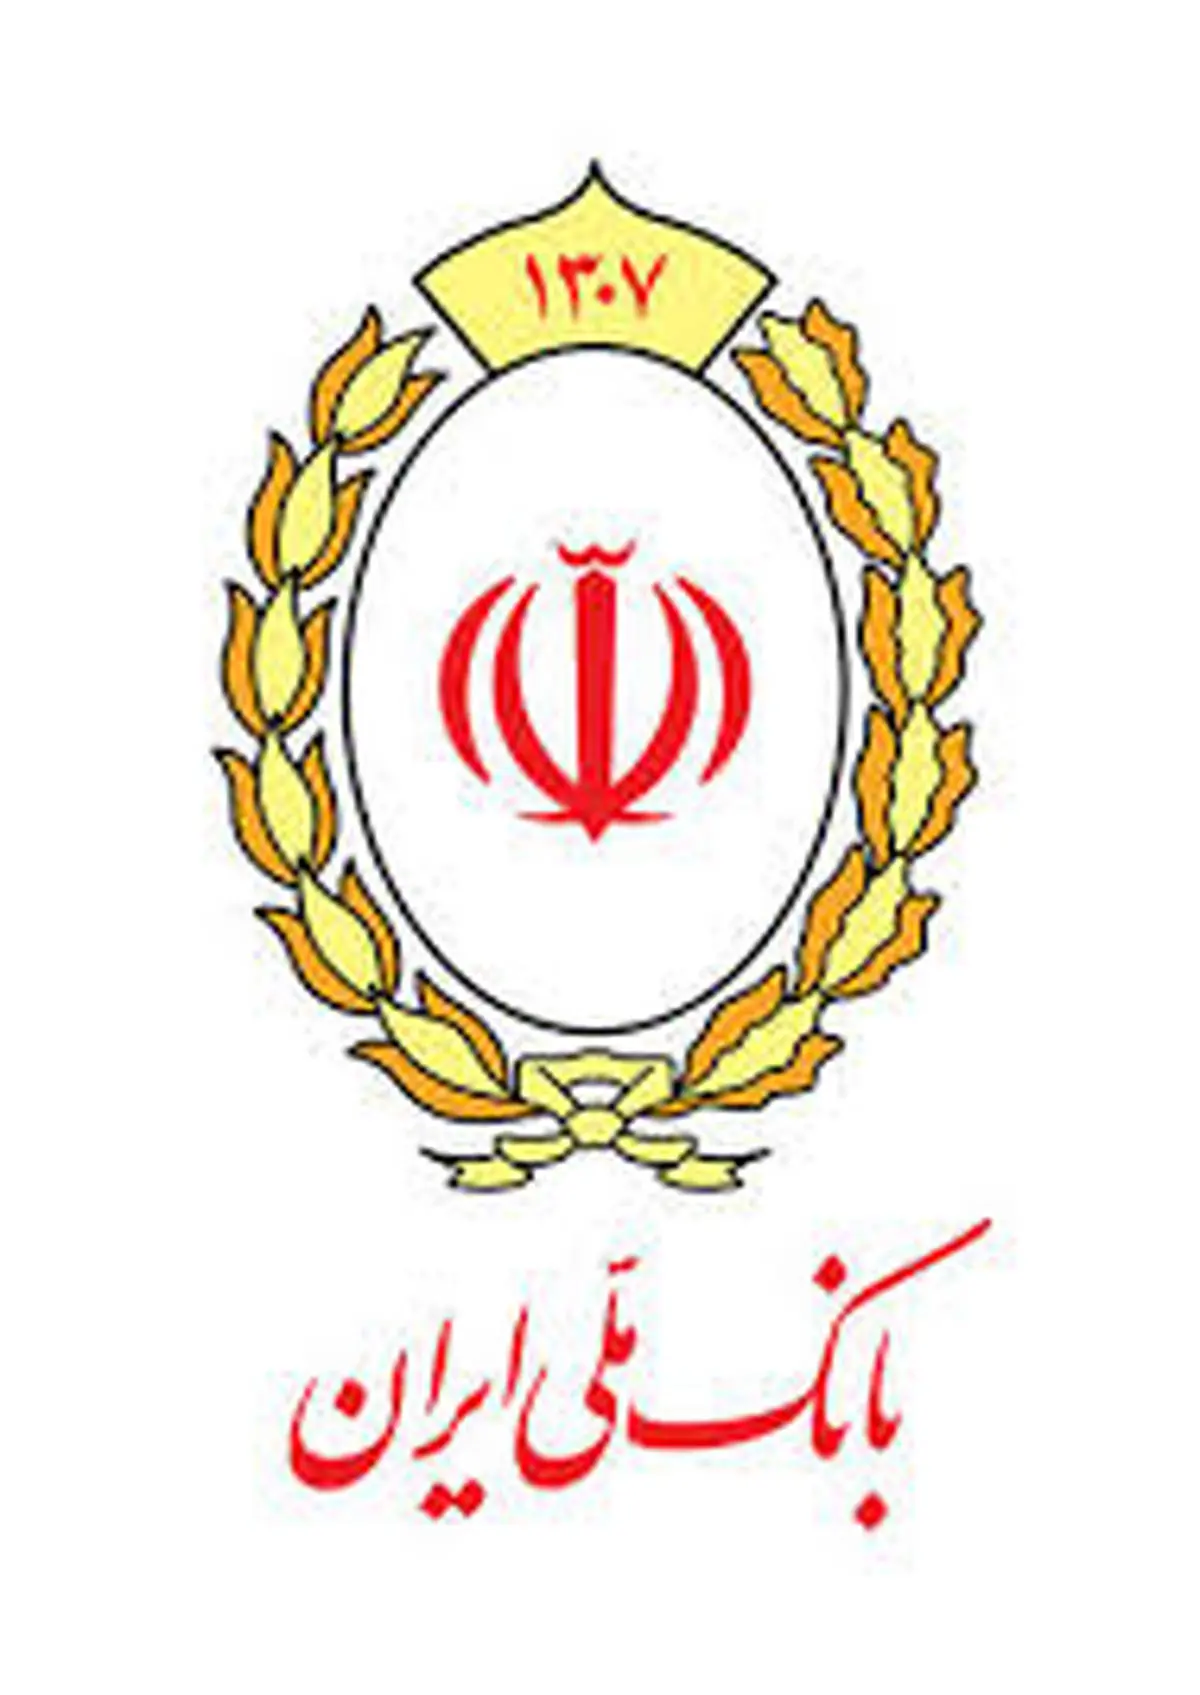 پرداخت بالغ بر 627 هزار میلیارد ریال تسهیلات عقود اسلامی در بانک ملی ایران

